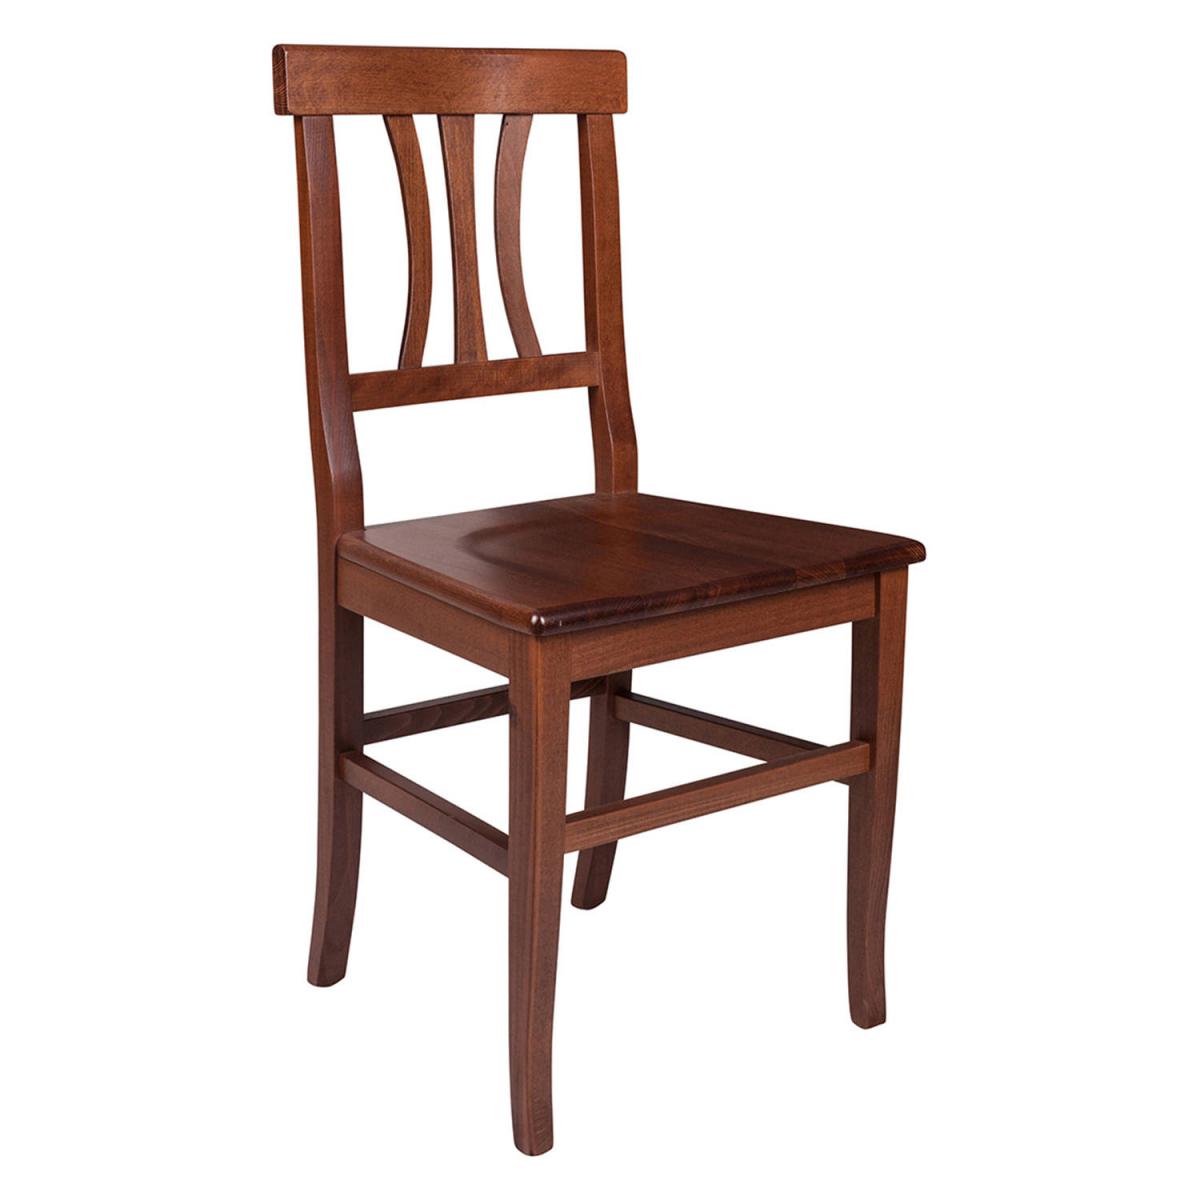 alter chaise de salon ou de cuisine, style country, bois de hêtre massif, 44x44.5h89 cm, couleur noyer